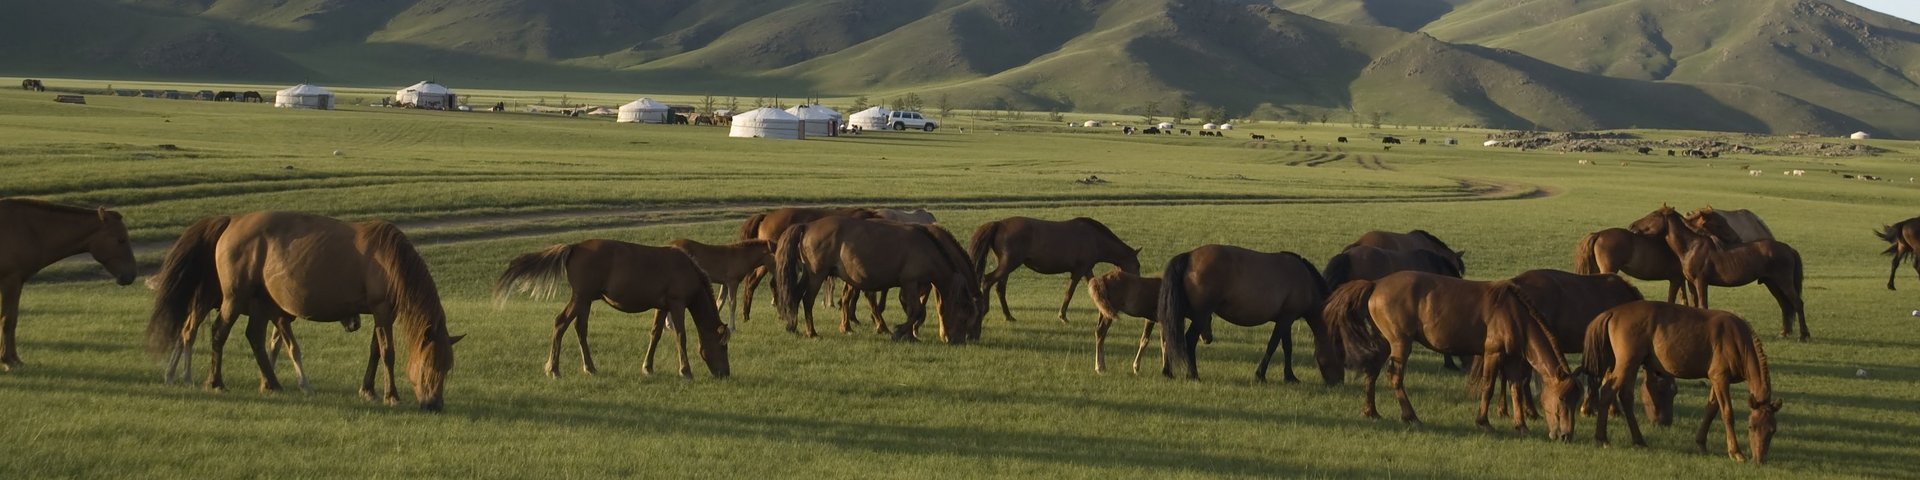 Pferdeherde bei einem Jurten Camp in der Mongolei